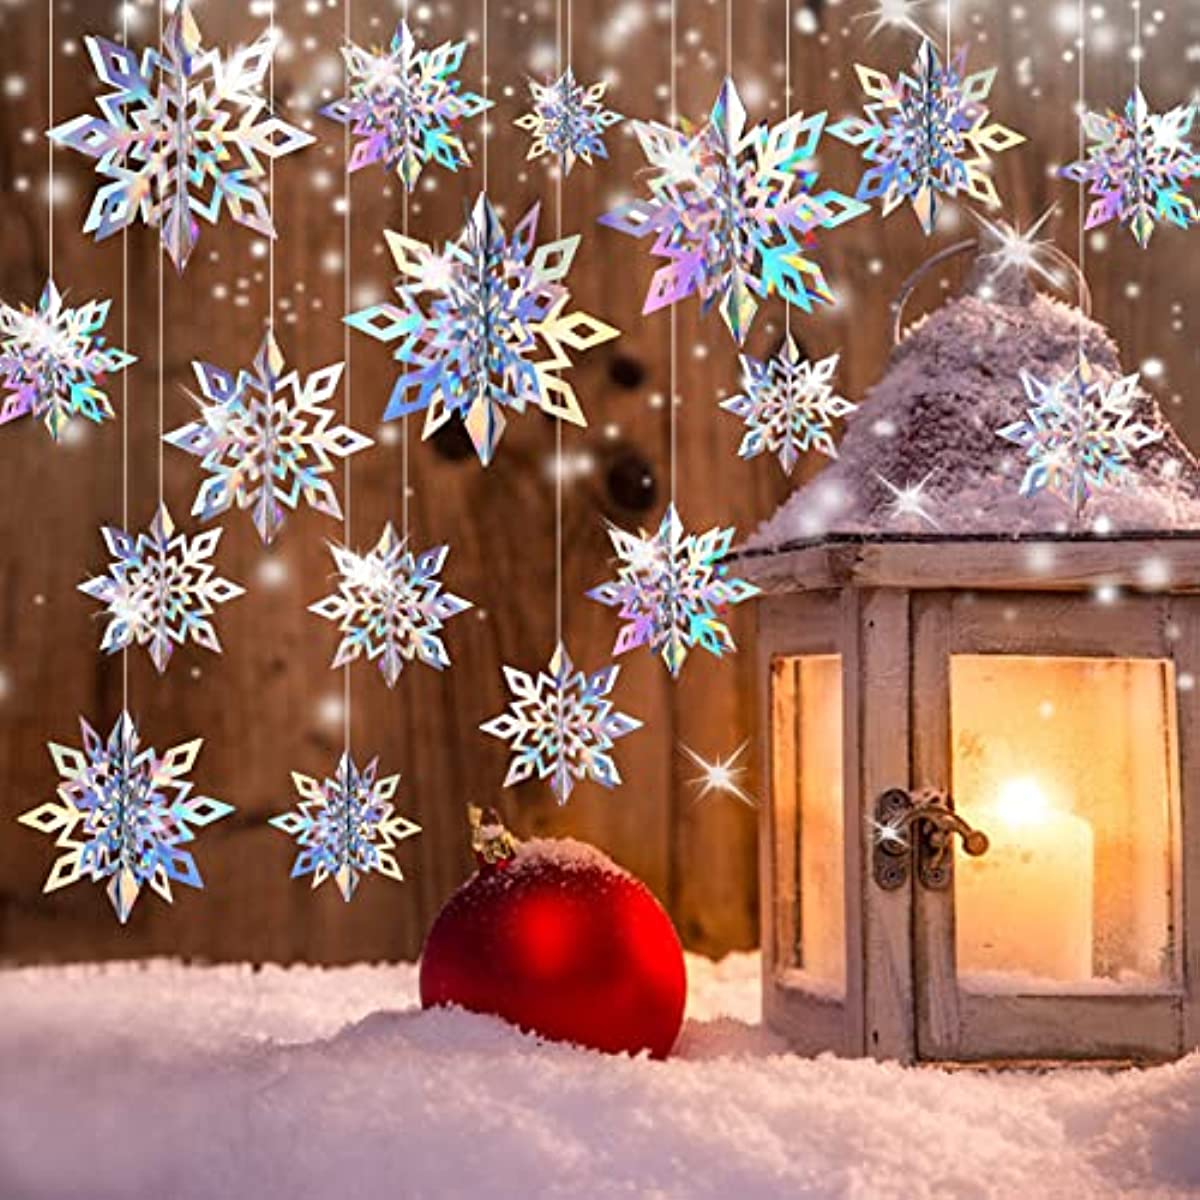 クリスマス飾り シルバー ガーランド雪の結晶 パーティー 雪 冬